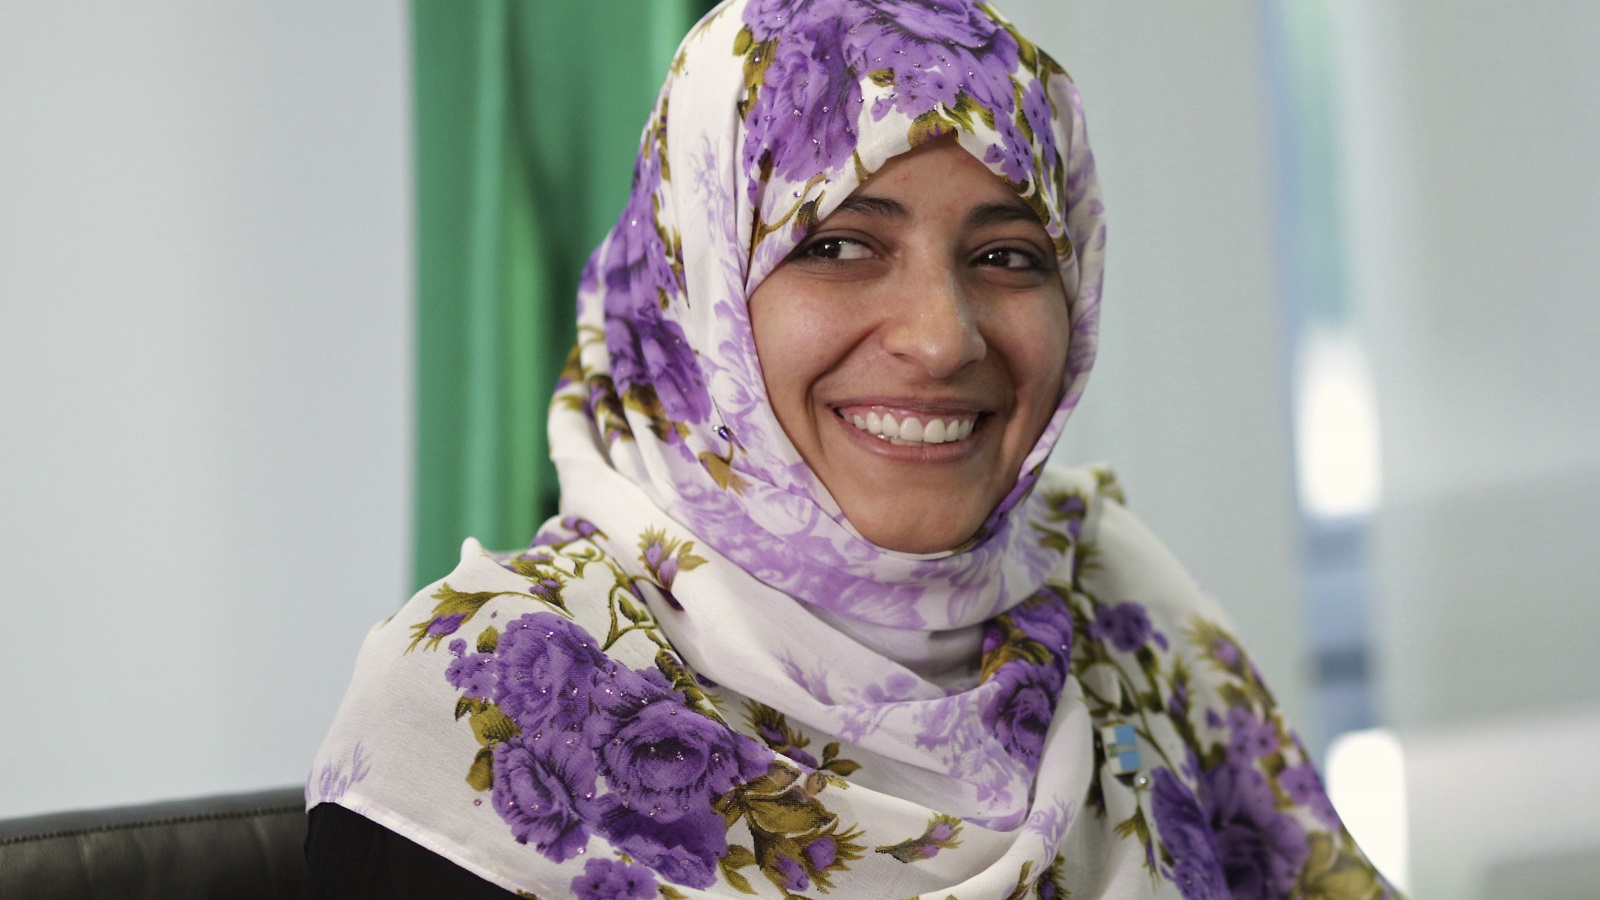 عُرفت توكّل بقيادة الاعتصامات والاحتجاجات في الثورةِ اليمنية، وقد أقدمت السُّلطات على اعتقالها في يناير 2011 بتهمة إقامة تجمُّعاتٍ ومسيراتٍ غير مرخصة.